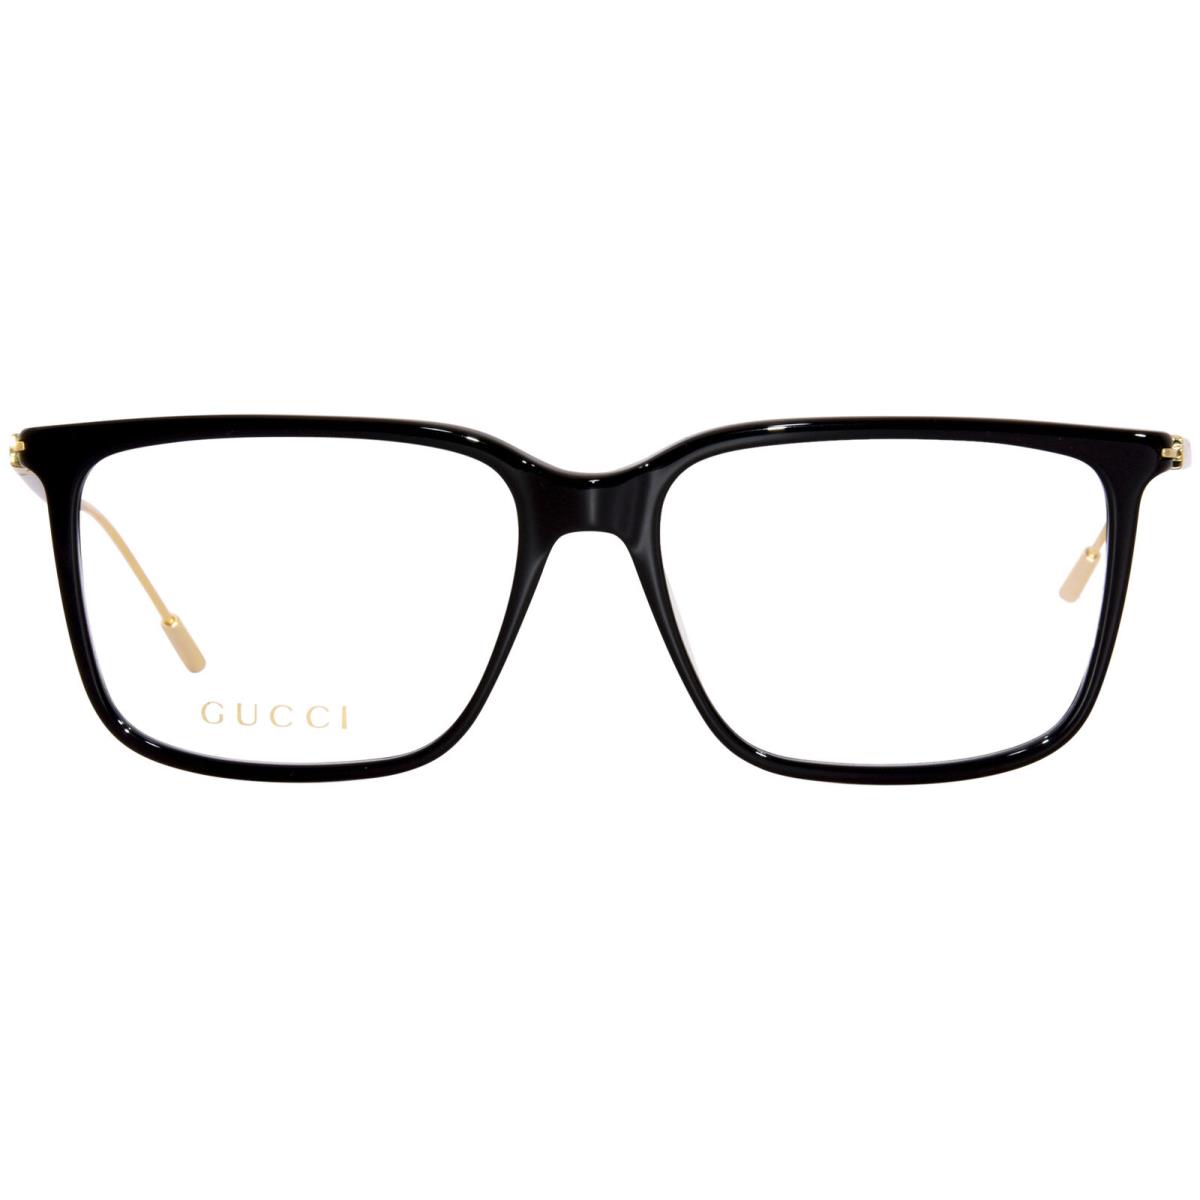 Gucci GG1273O 001 Eyeglasses Frame Men`s Black/gold Full Rim Square Shape 56-mm